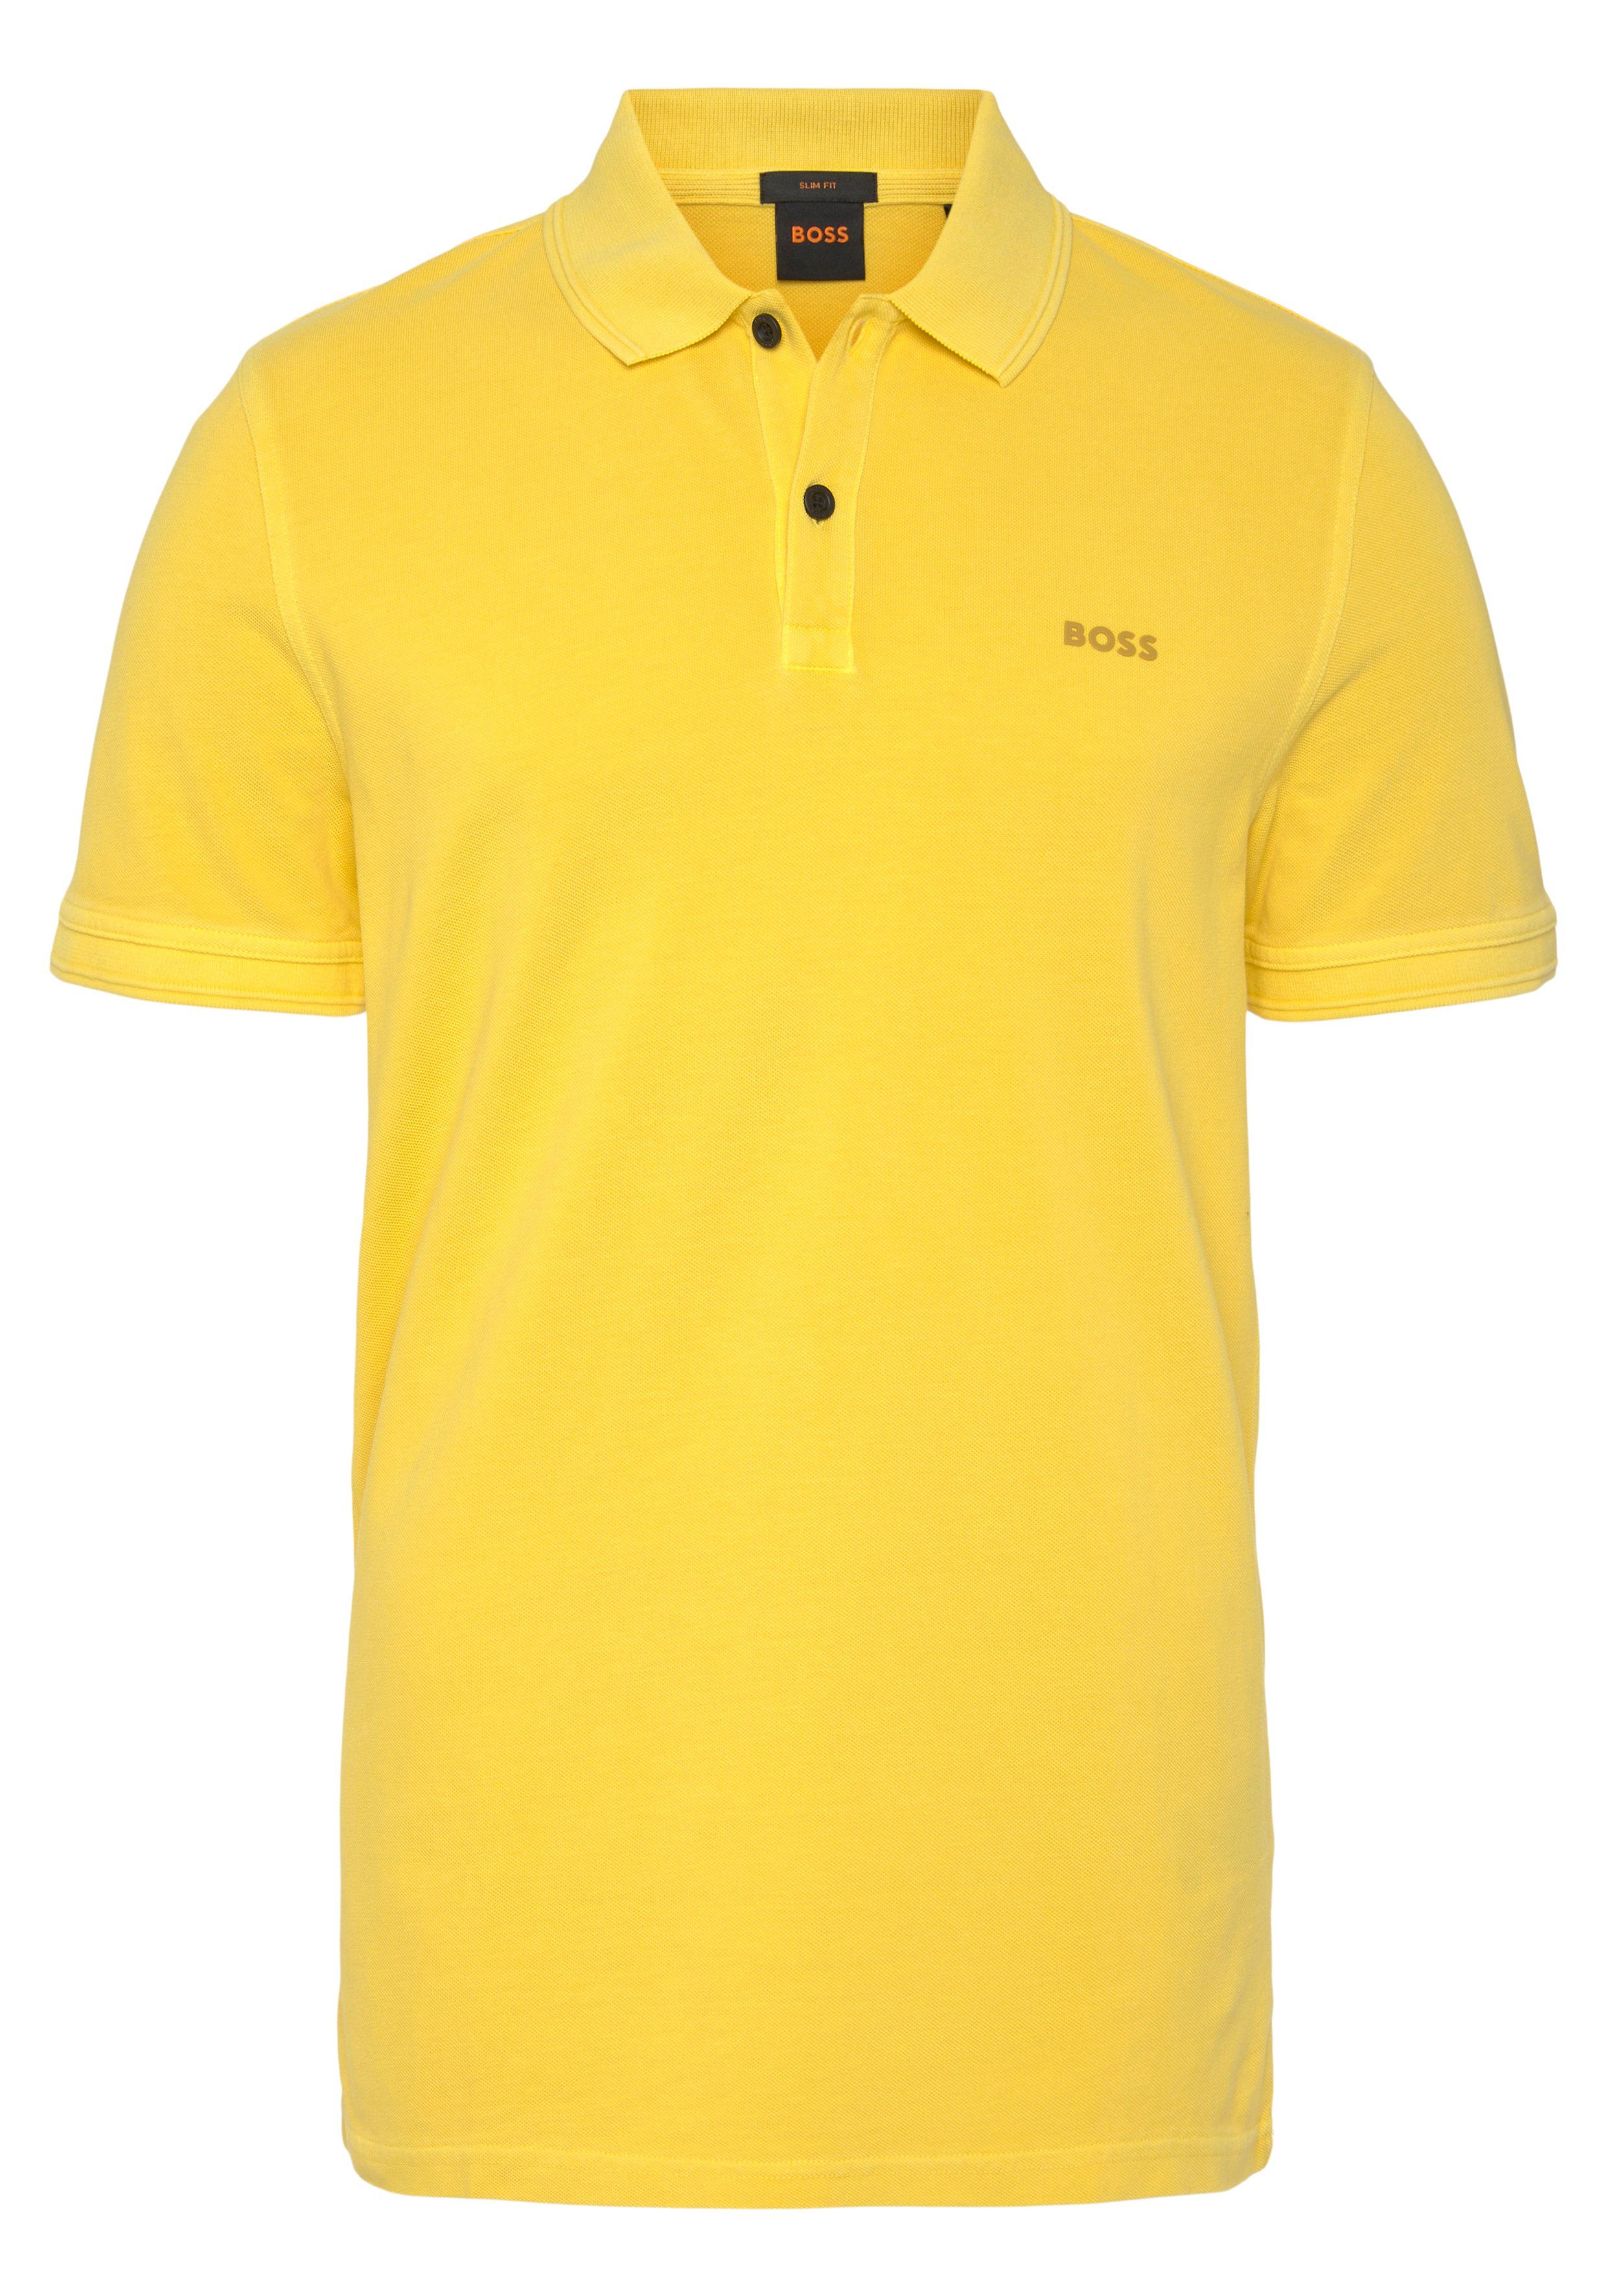 BOSS ORANGE Poloshirt Prime dezentem Brust 01 mit 10203439 Logoschriftzug Light/Pastel_Yellow der auf